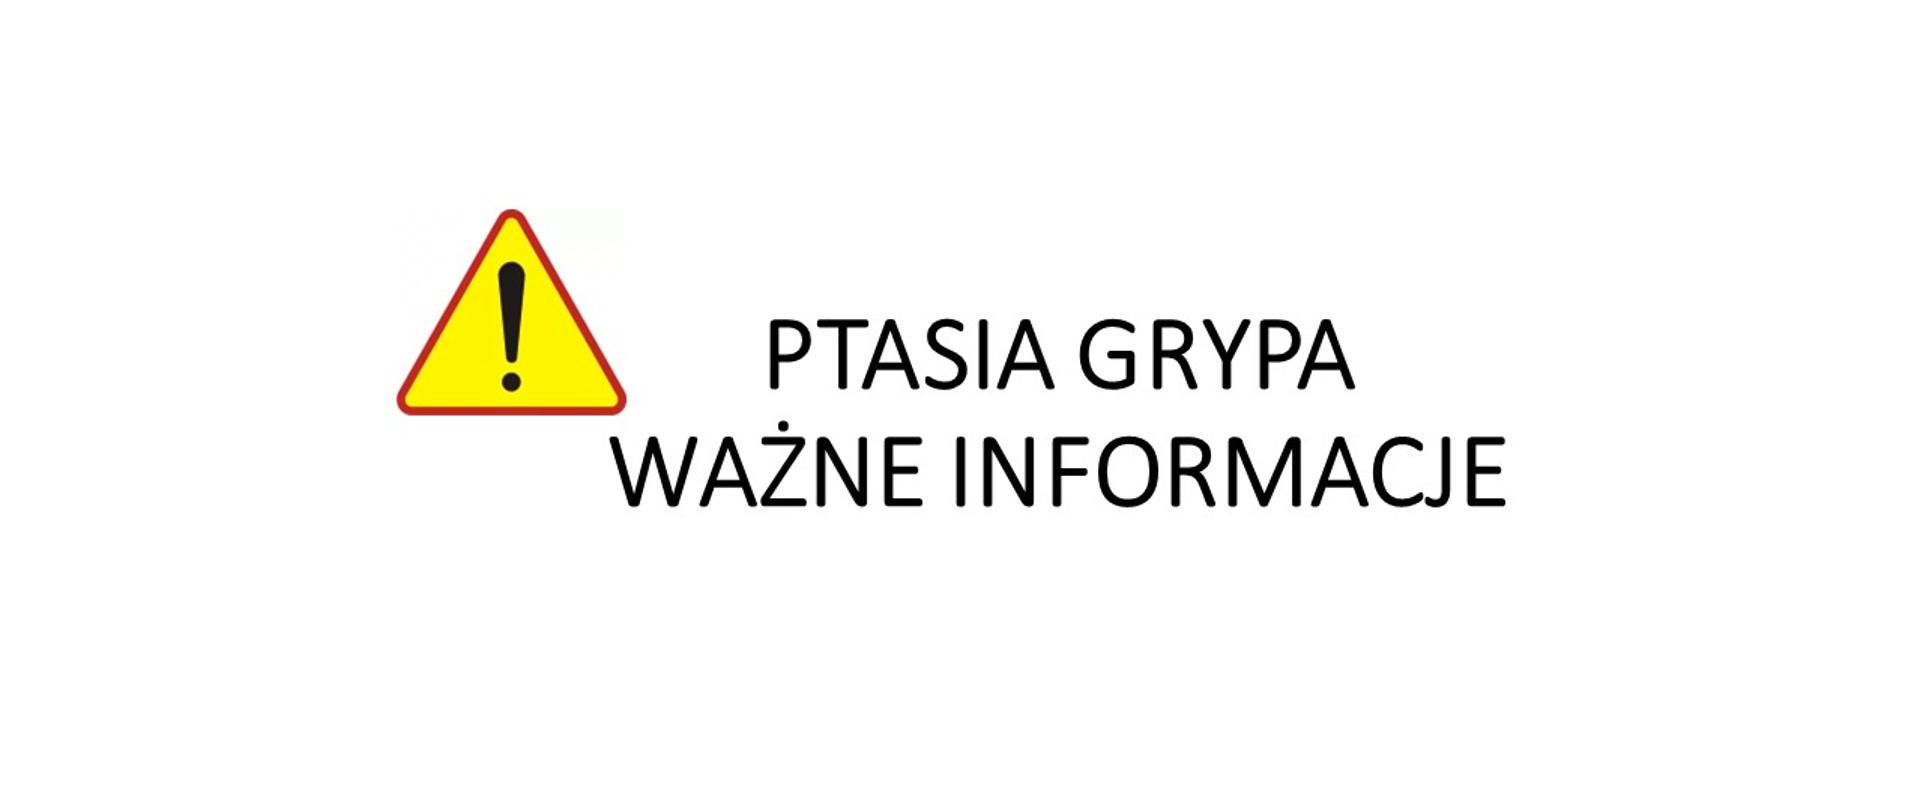 znak uwaga w żółtym trójkącie czarny wykrzyknik, obok znaku napis ptasia grypa ważne informacje